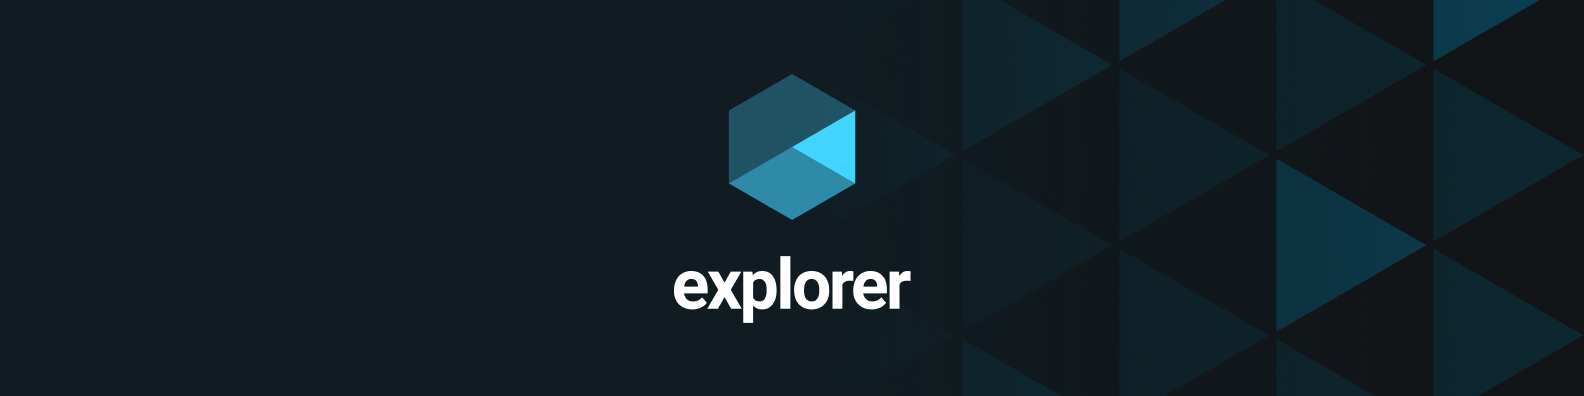 explorer.png